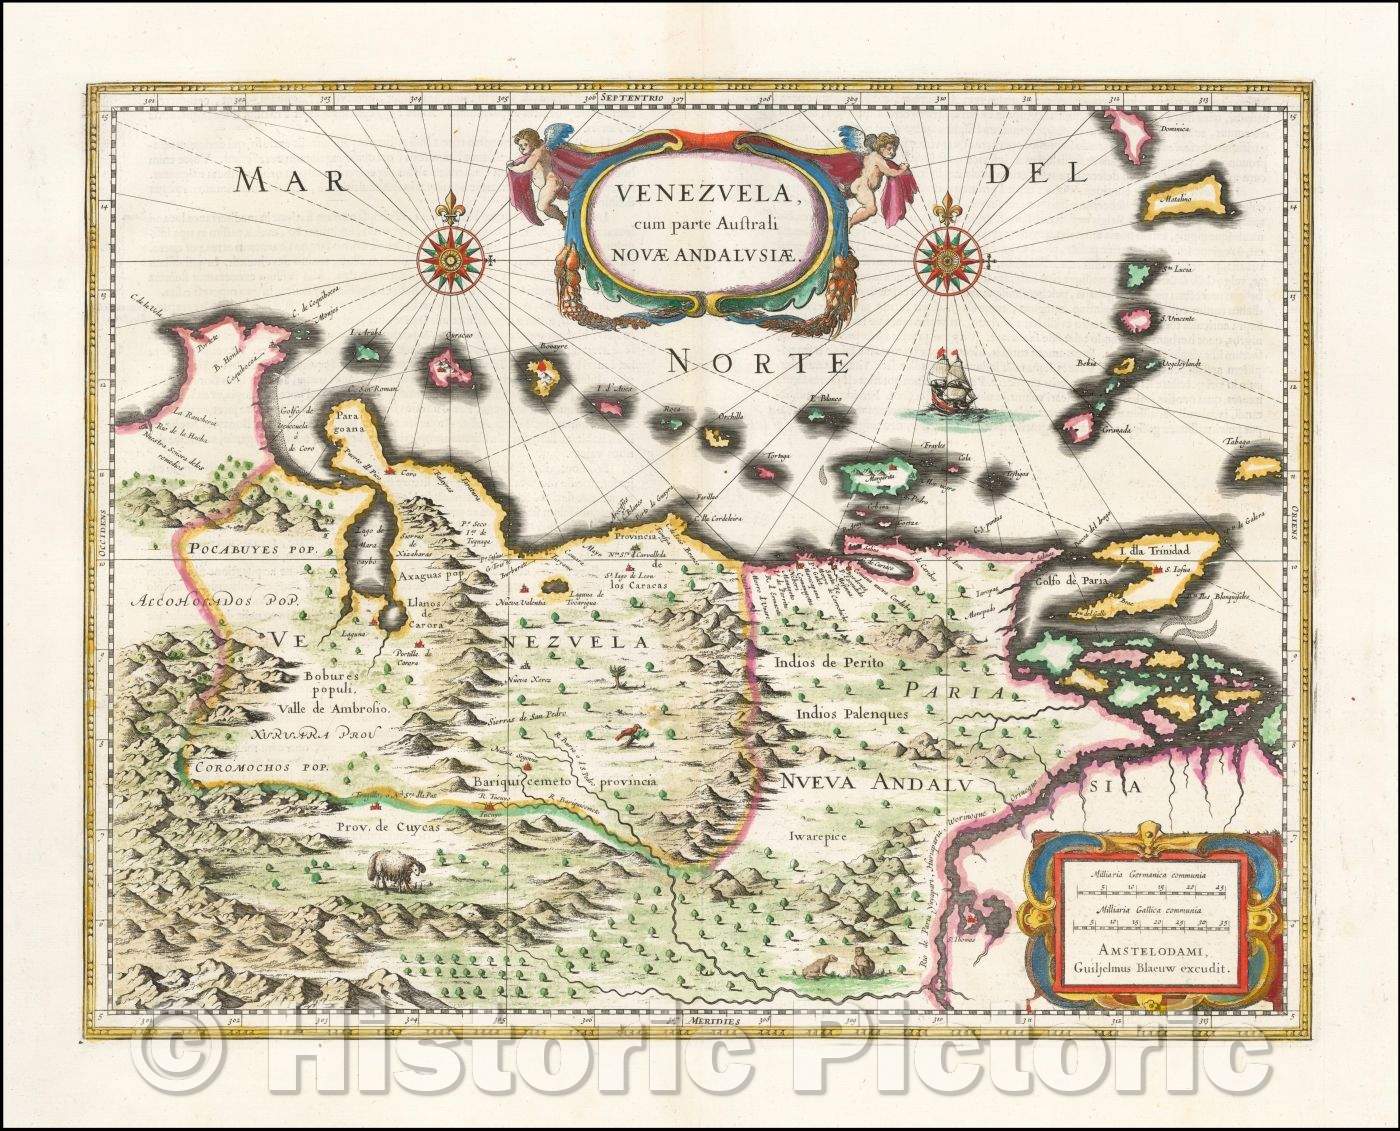 Historic Map - Venezuela cum parte Australi Novae Andalusiae, 1640, Willem Janszoon Blaeu - Vintage Wall Art